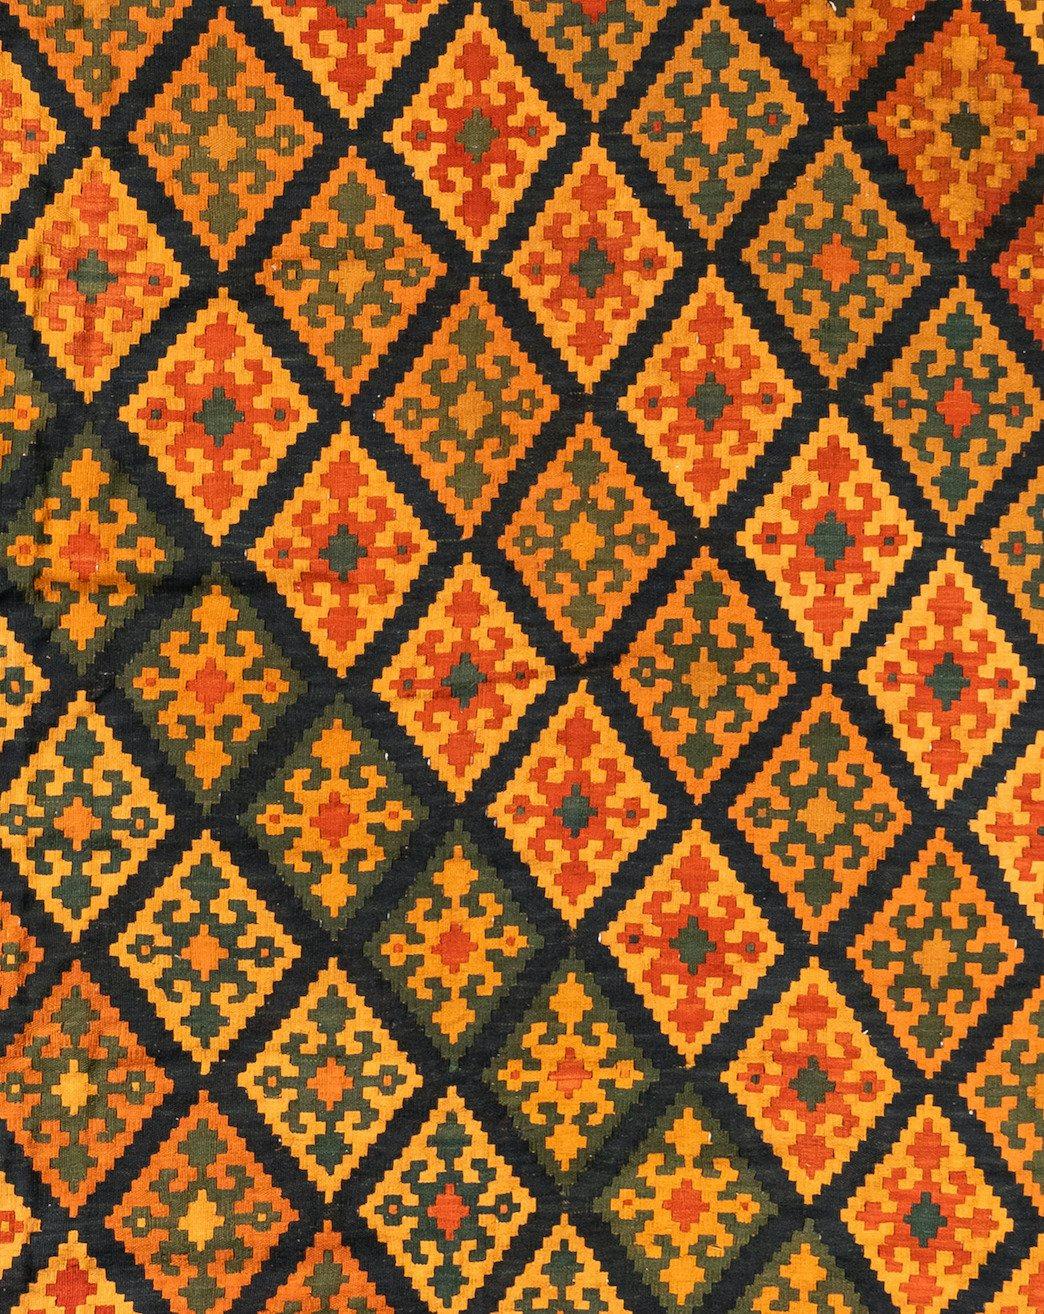 Kilim, ein Wort türkischen Ursprungs, bezeichnet ein florloses, vielseitig verwendbares Textil, das mit einer von mehreren Flachwebtechniken hergestellt wird, die ein gemeinsames oder eng verwandtes Erbe haben und in dem geografischen Gebiet